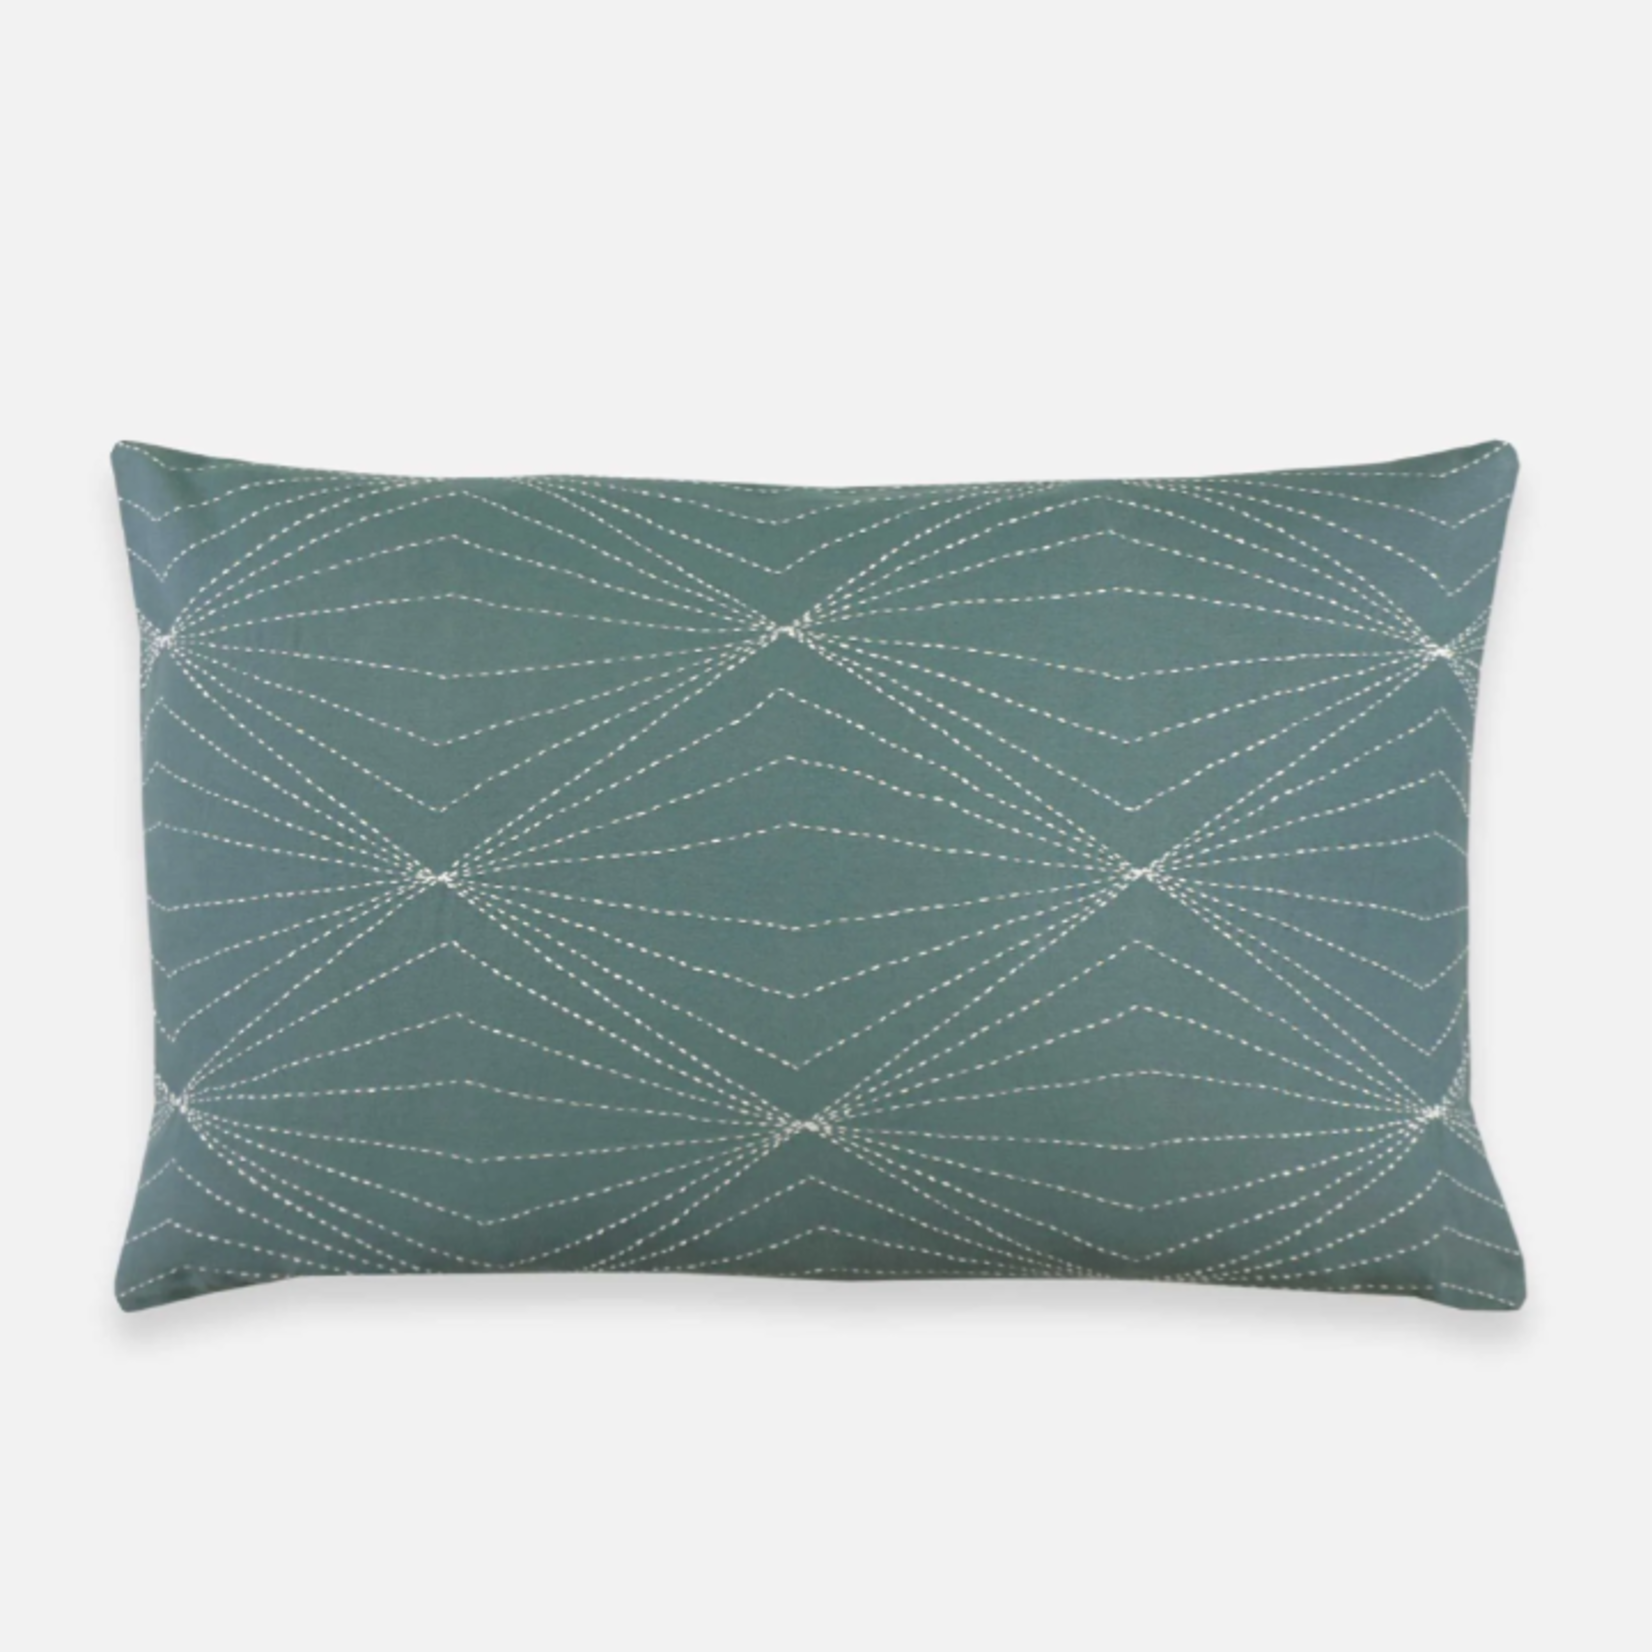 Anchal Anchal Prism Lumbar Pillow, 16" x 26"